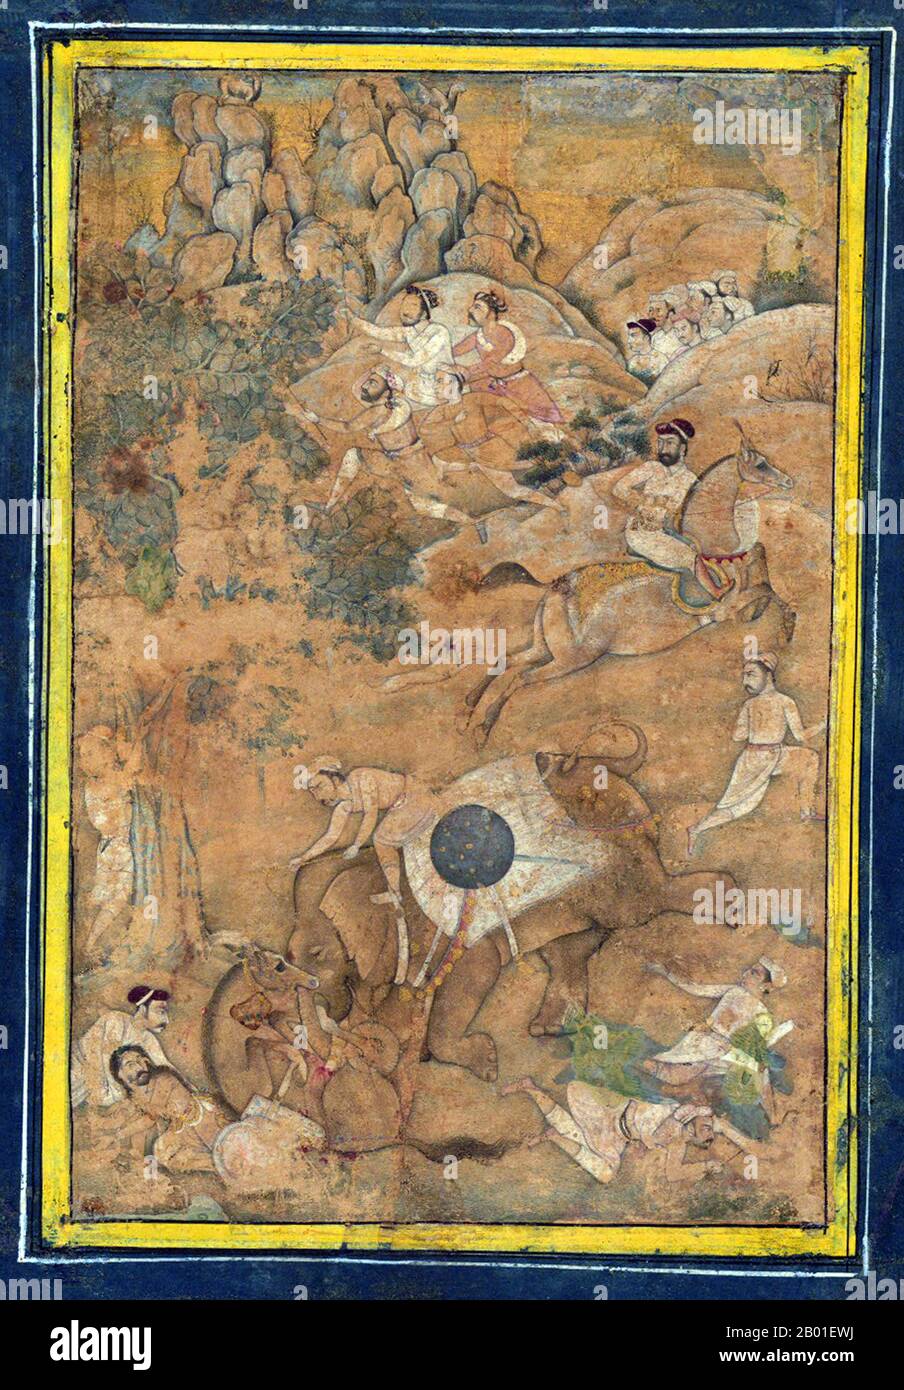 Indien: Kaiser Akbar (25. Oktober 1542 - 27. Oktober 1605) kontrolliert während einer Jagd einen Elefanten in Musth. Blatt, c. Anfang des 17. Jahrhunderts. Akbar (r. 1556-1605), auch bekannt als Shahanshah Akbar-e-Azam oder Akbar der große, war der dritte Mogul-Kaiser. Er war von timuridem Abstammung; der Sohn von Kaiser Humayun und der Enkel von Kaiser Babur, dem Herrscher, der die Mogul-Dynastie in Indien gründete. Am Ende seiner Herrschaft im Jahr 1605 erstreckte sich das Mogul-Reich über den größten Teil des nördlichen und mittleren Indiens. Akbar war 13 Jahre alt, als er den Mogul-Thron in Delhi bestieg (Februar 1556). Stockfoto